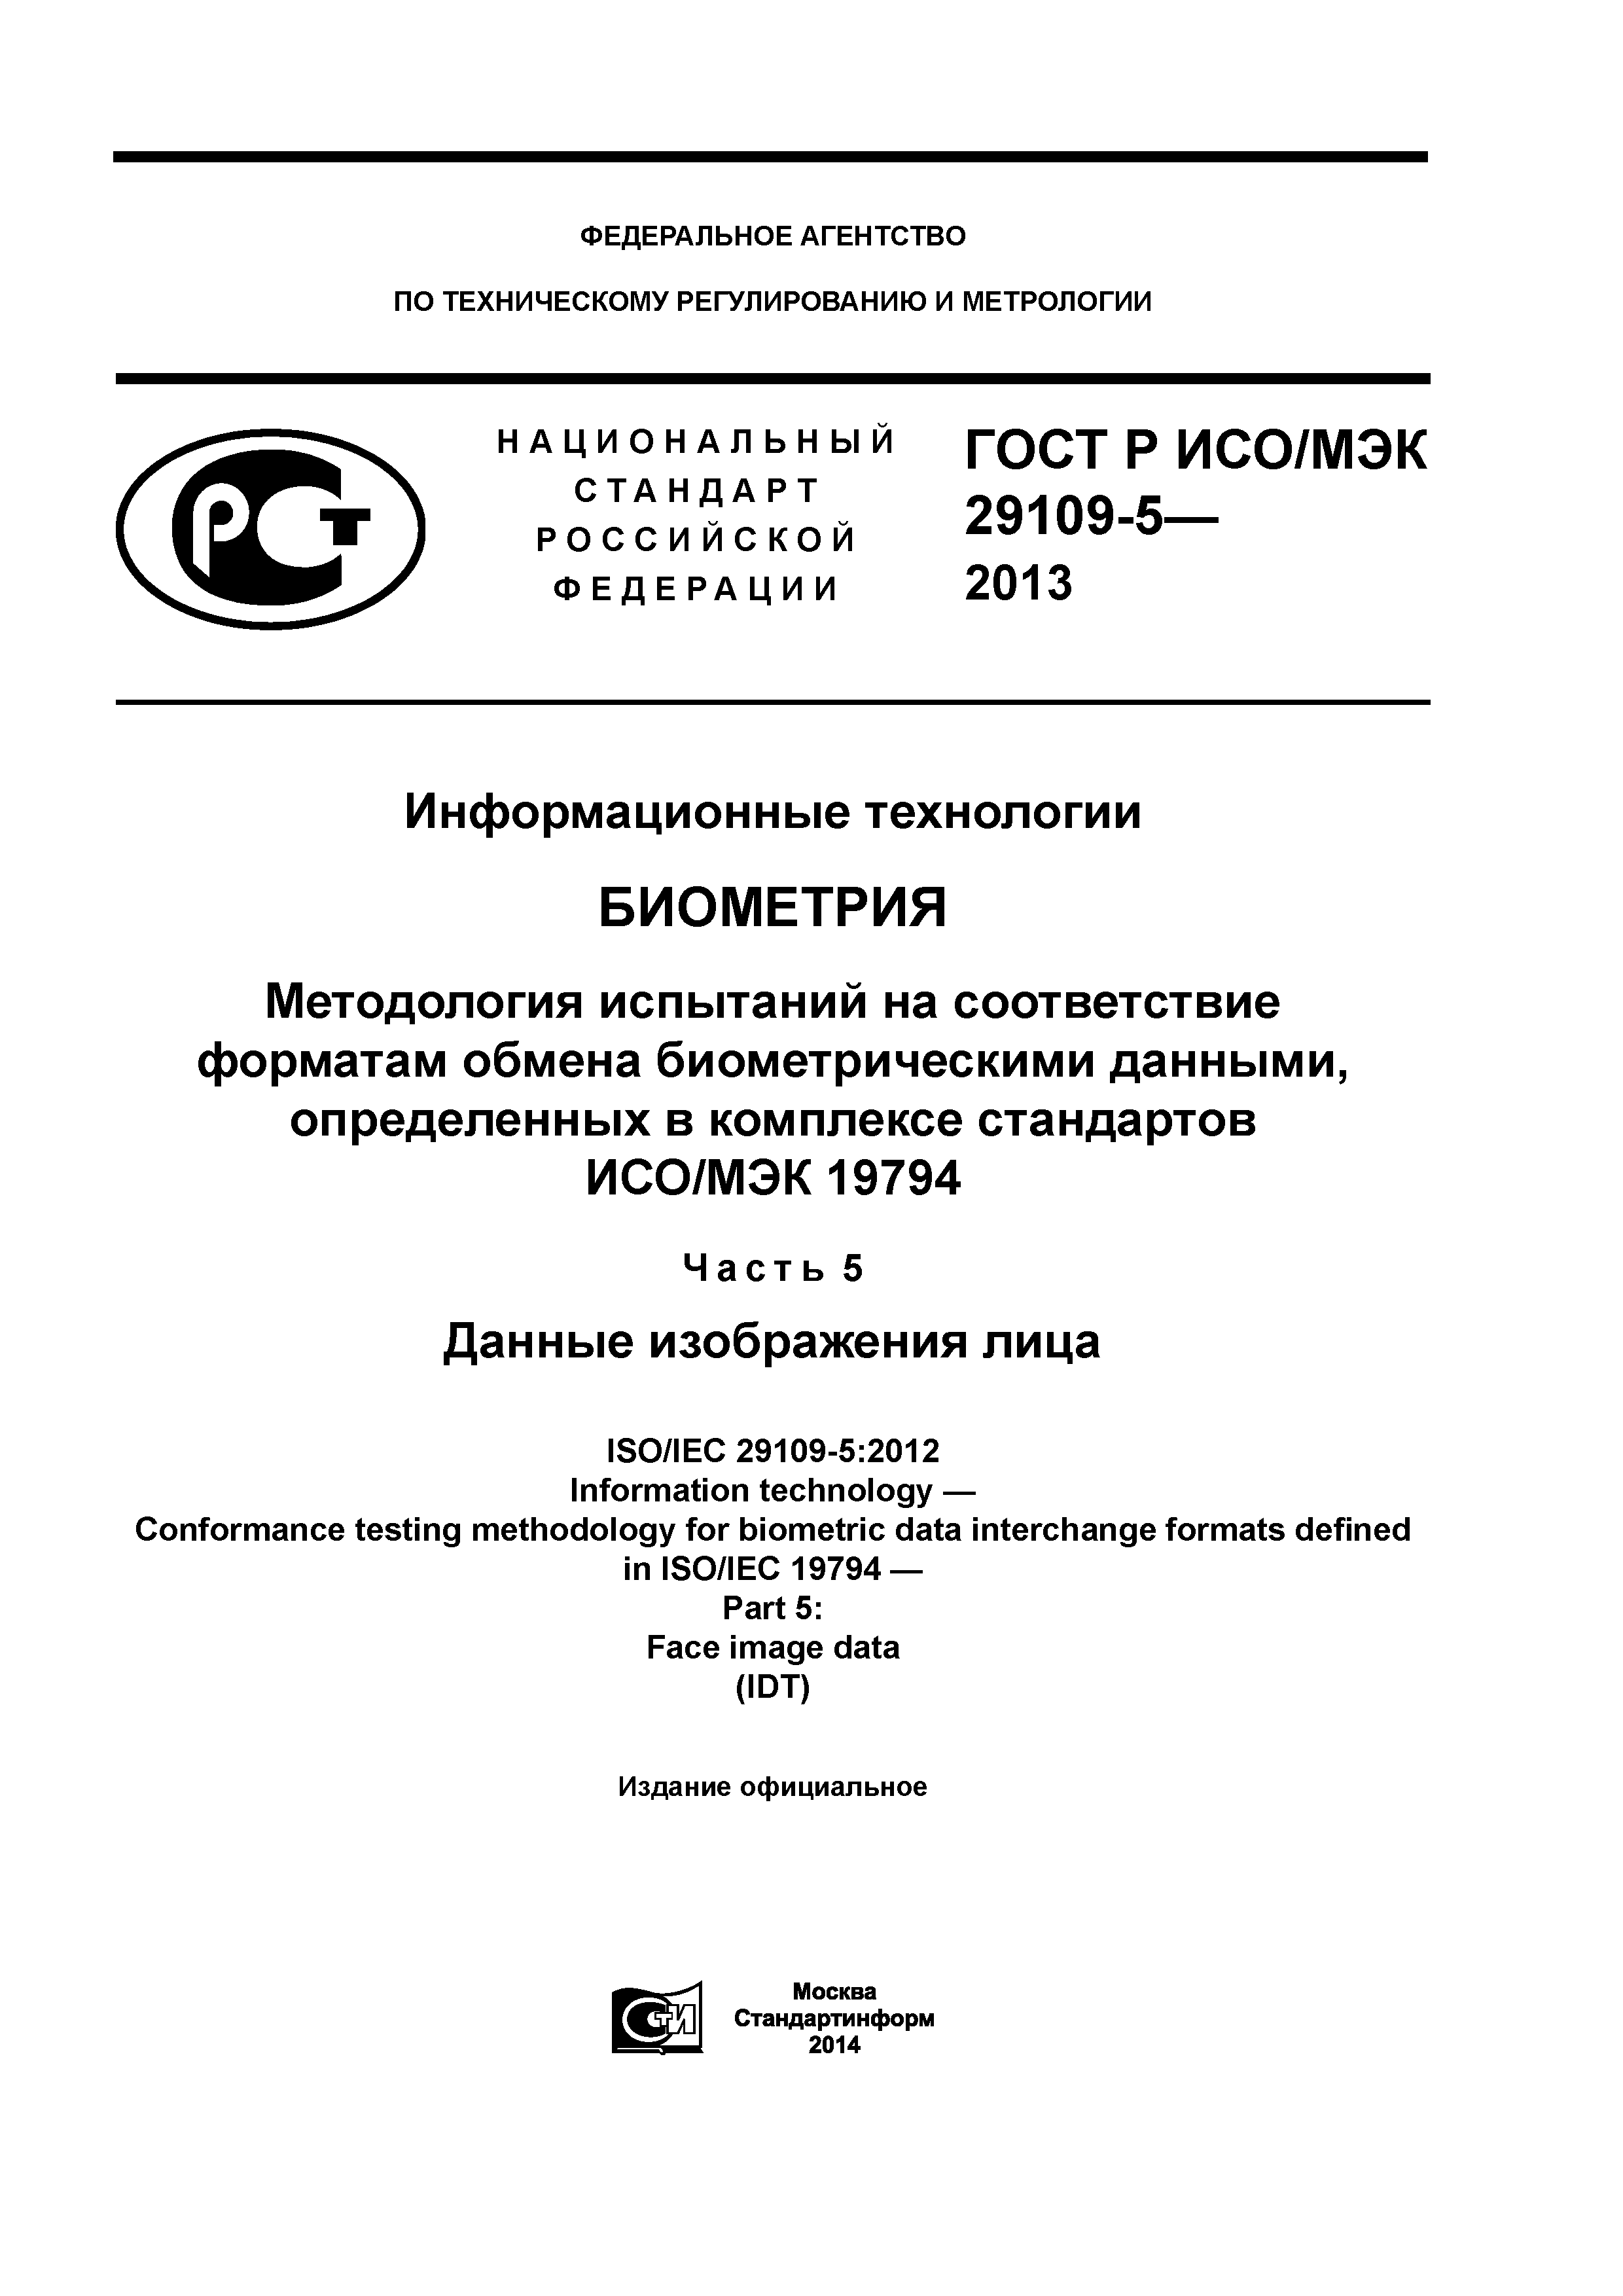 ГОСТ Р ИСО/МЭК 29109-5-2013